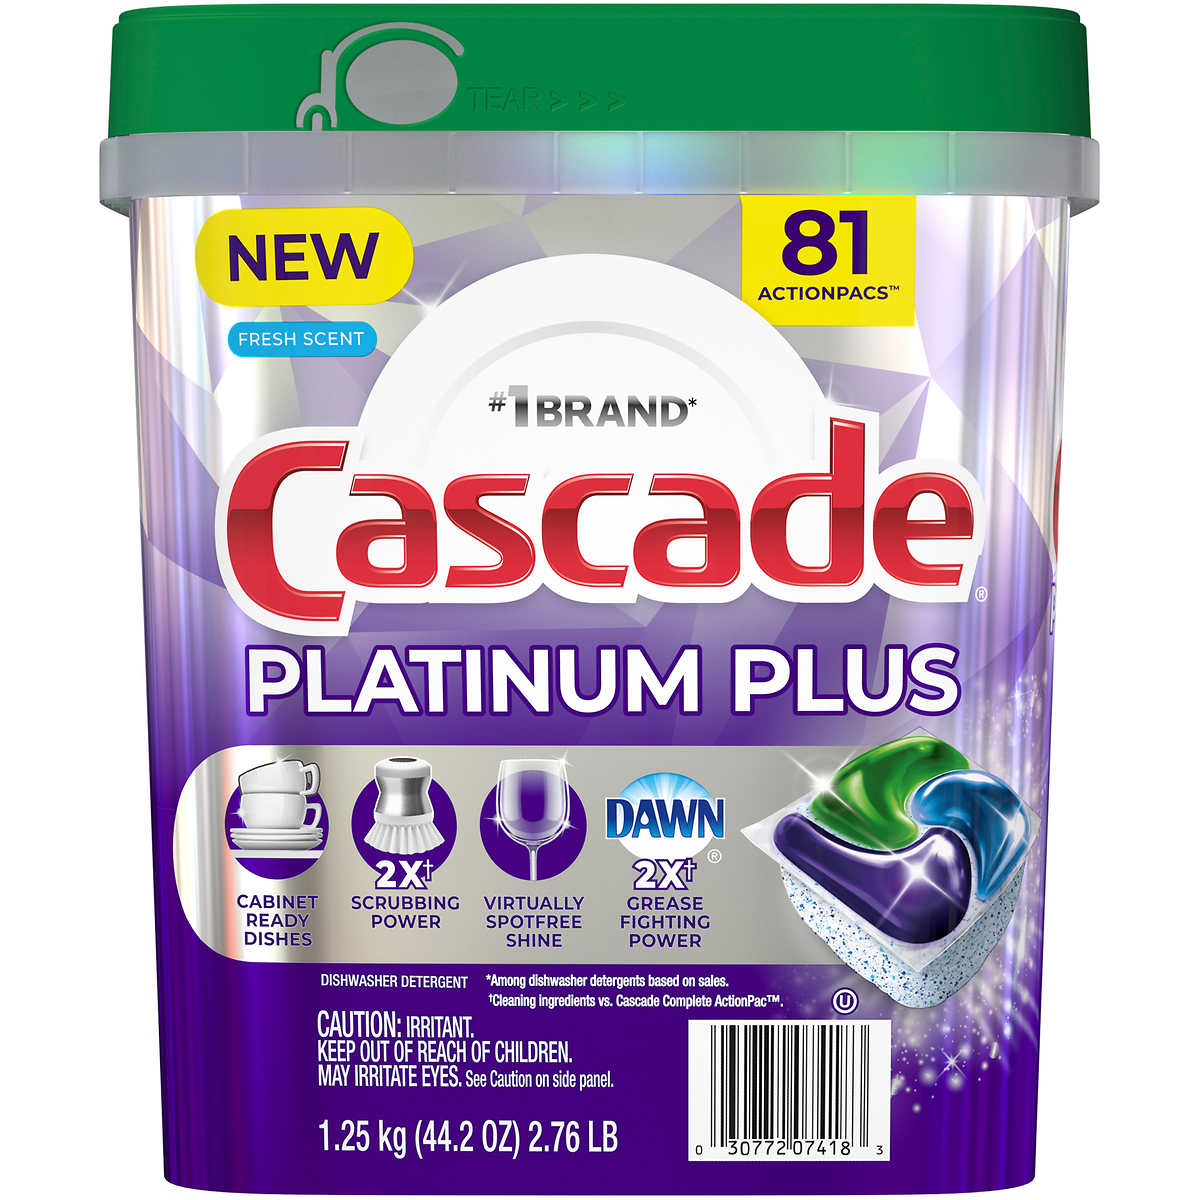 Cascade Platinum Plus Dishwasher ActionPacs, Fresh Scent, 81 Count